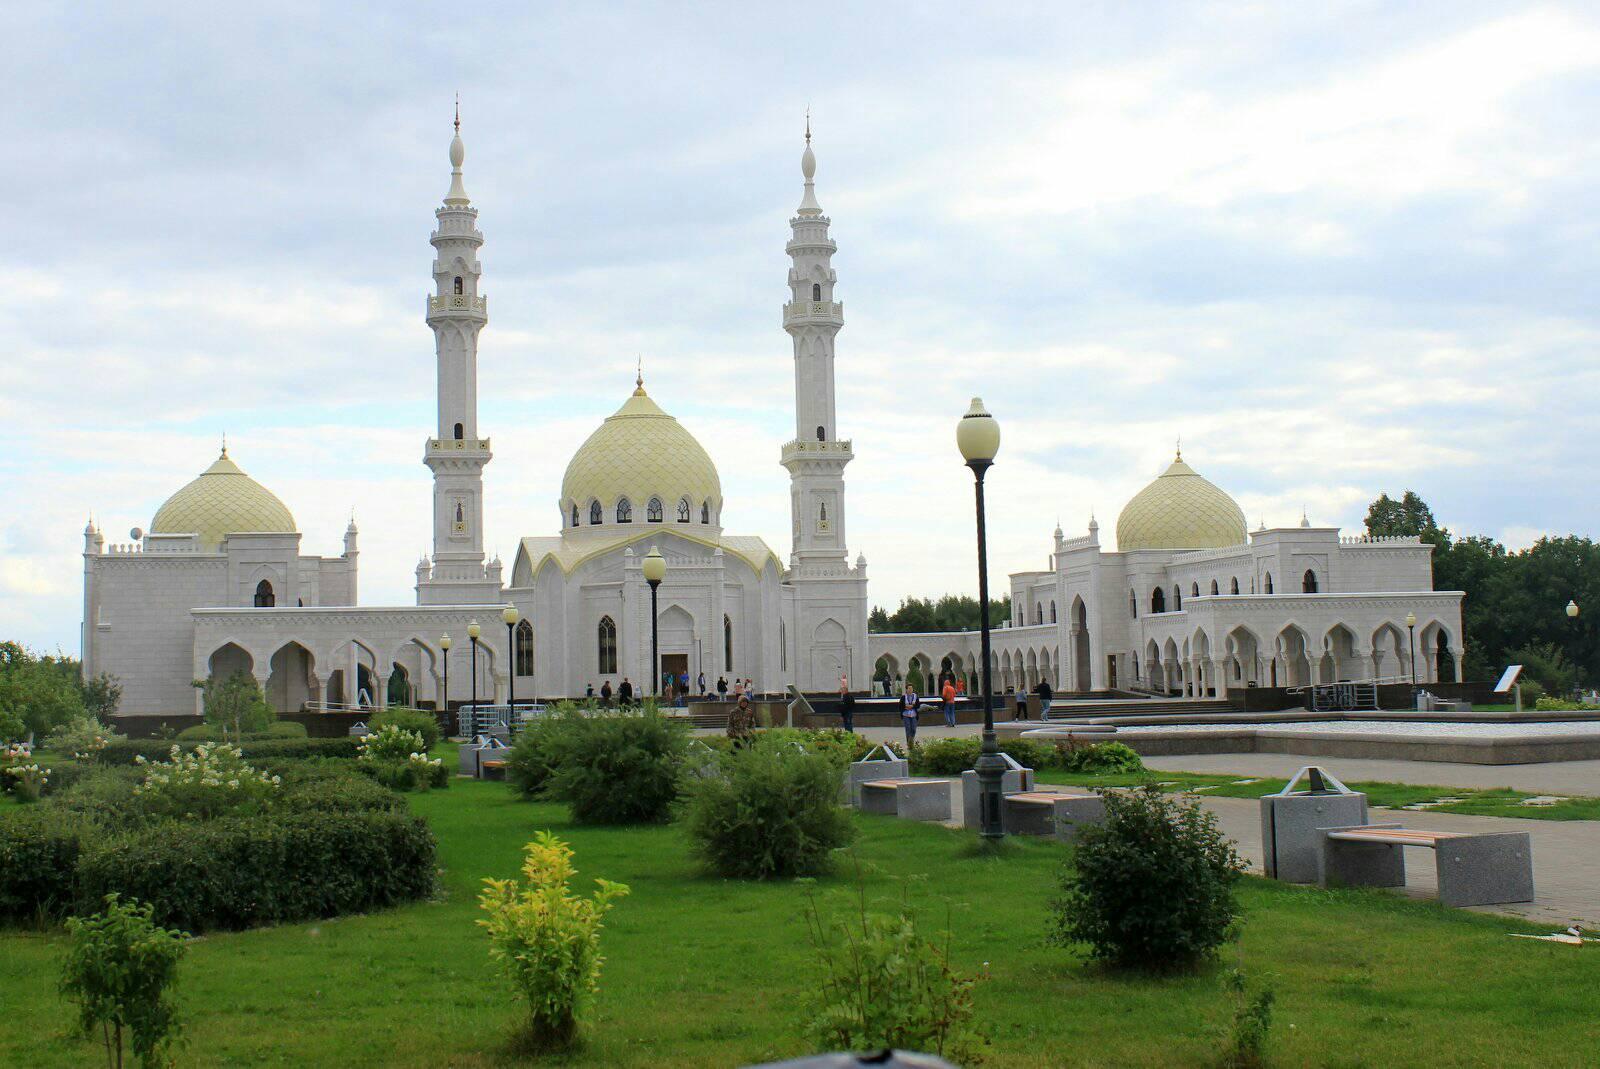 المسجد الأبيض في مدينة بلغار، جمهورية تتارستان، وسط روسيا ـ مصدر الصورة: صفحة (اكتشف روسيا Discover Russia) على فيسبوك.